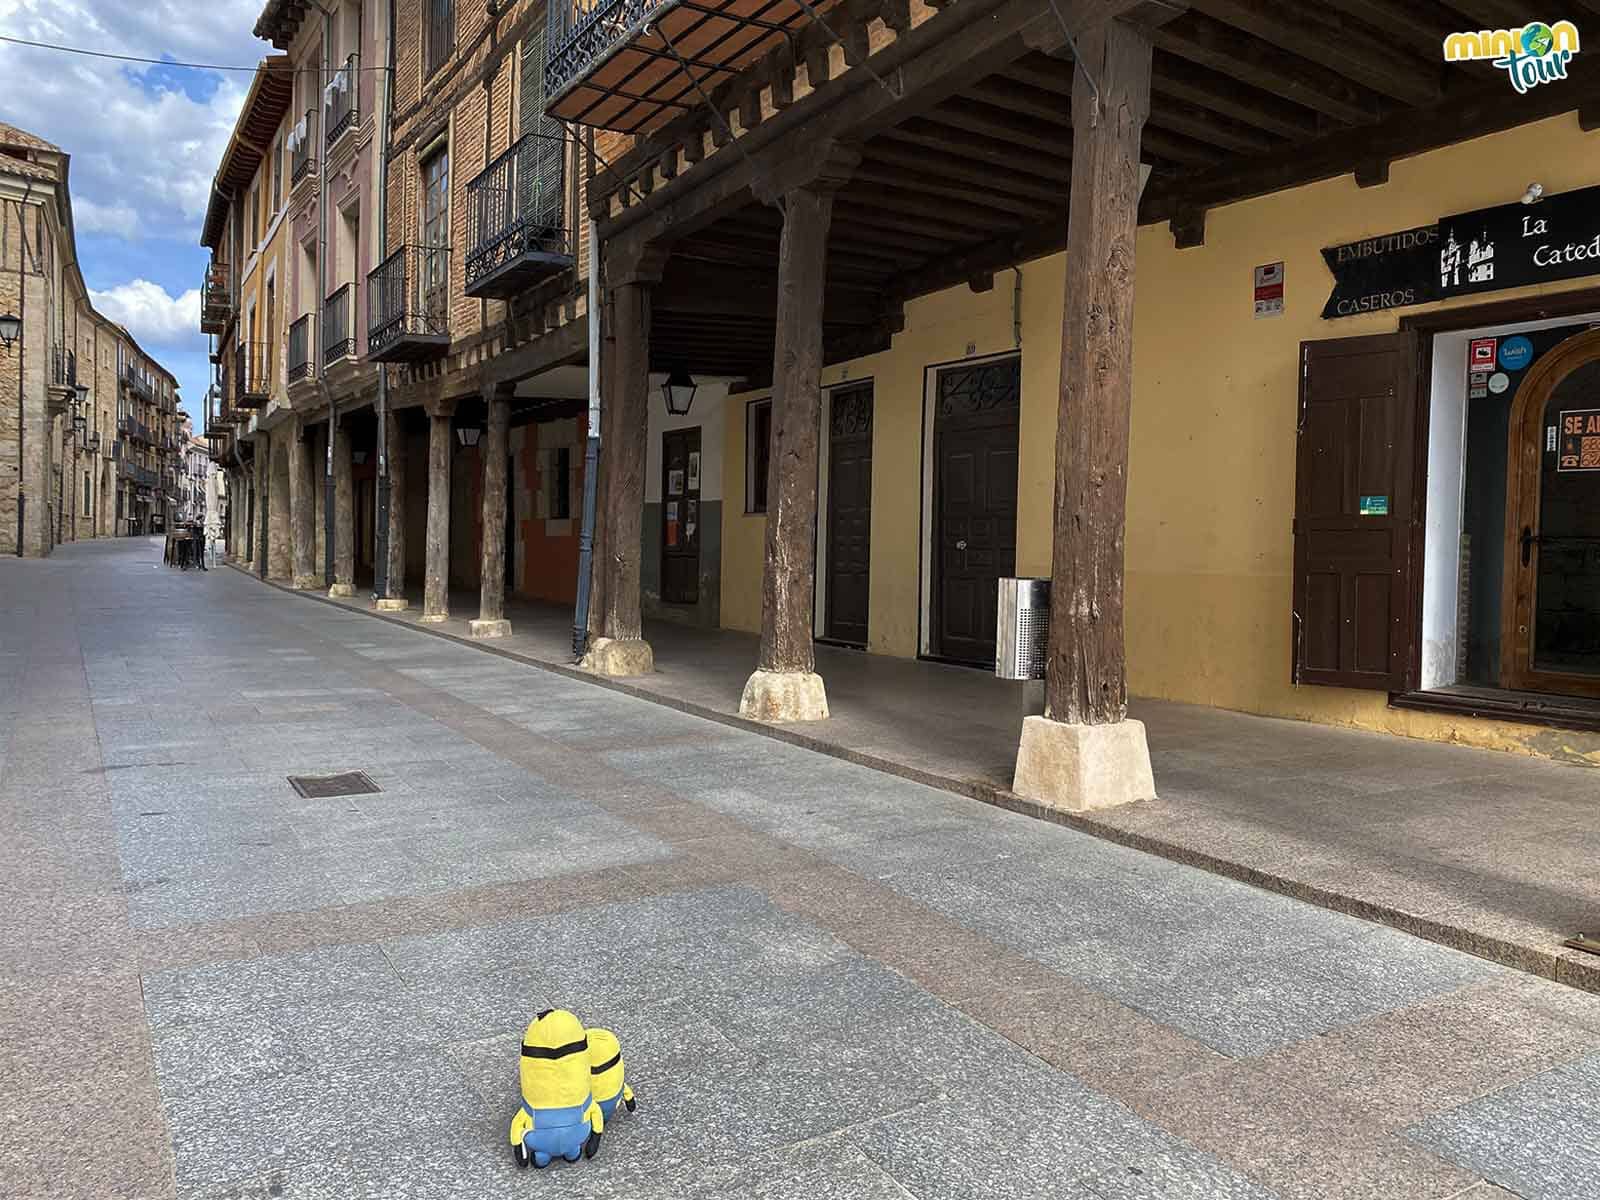 Minions paseando por las calles de El Burgo de Osma, uno de Los Pueblos más Bonitos de España